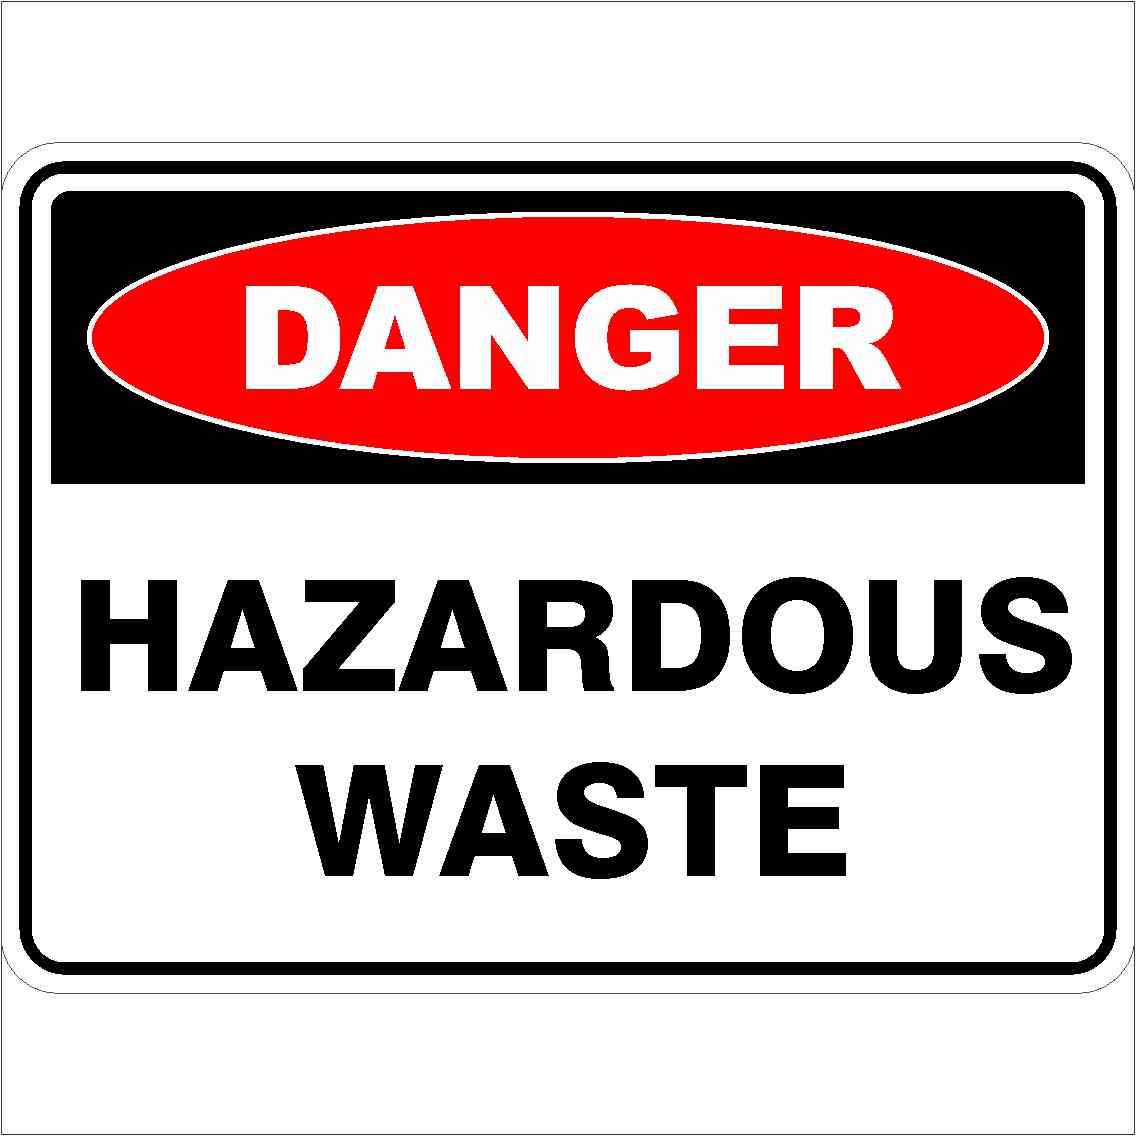 Hazardous Waste Management Training